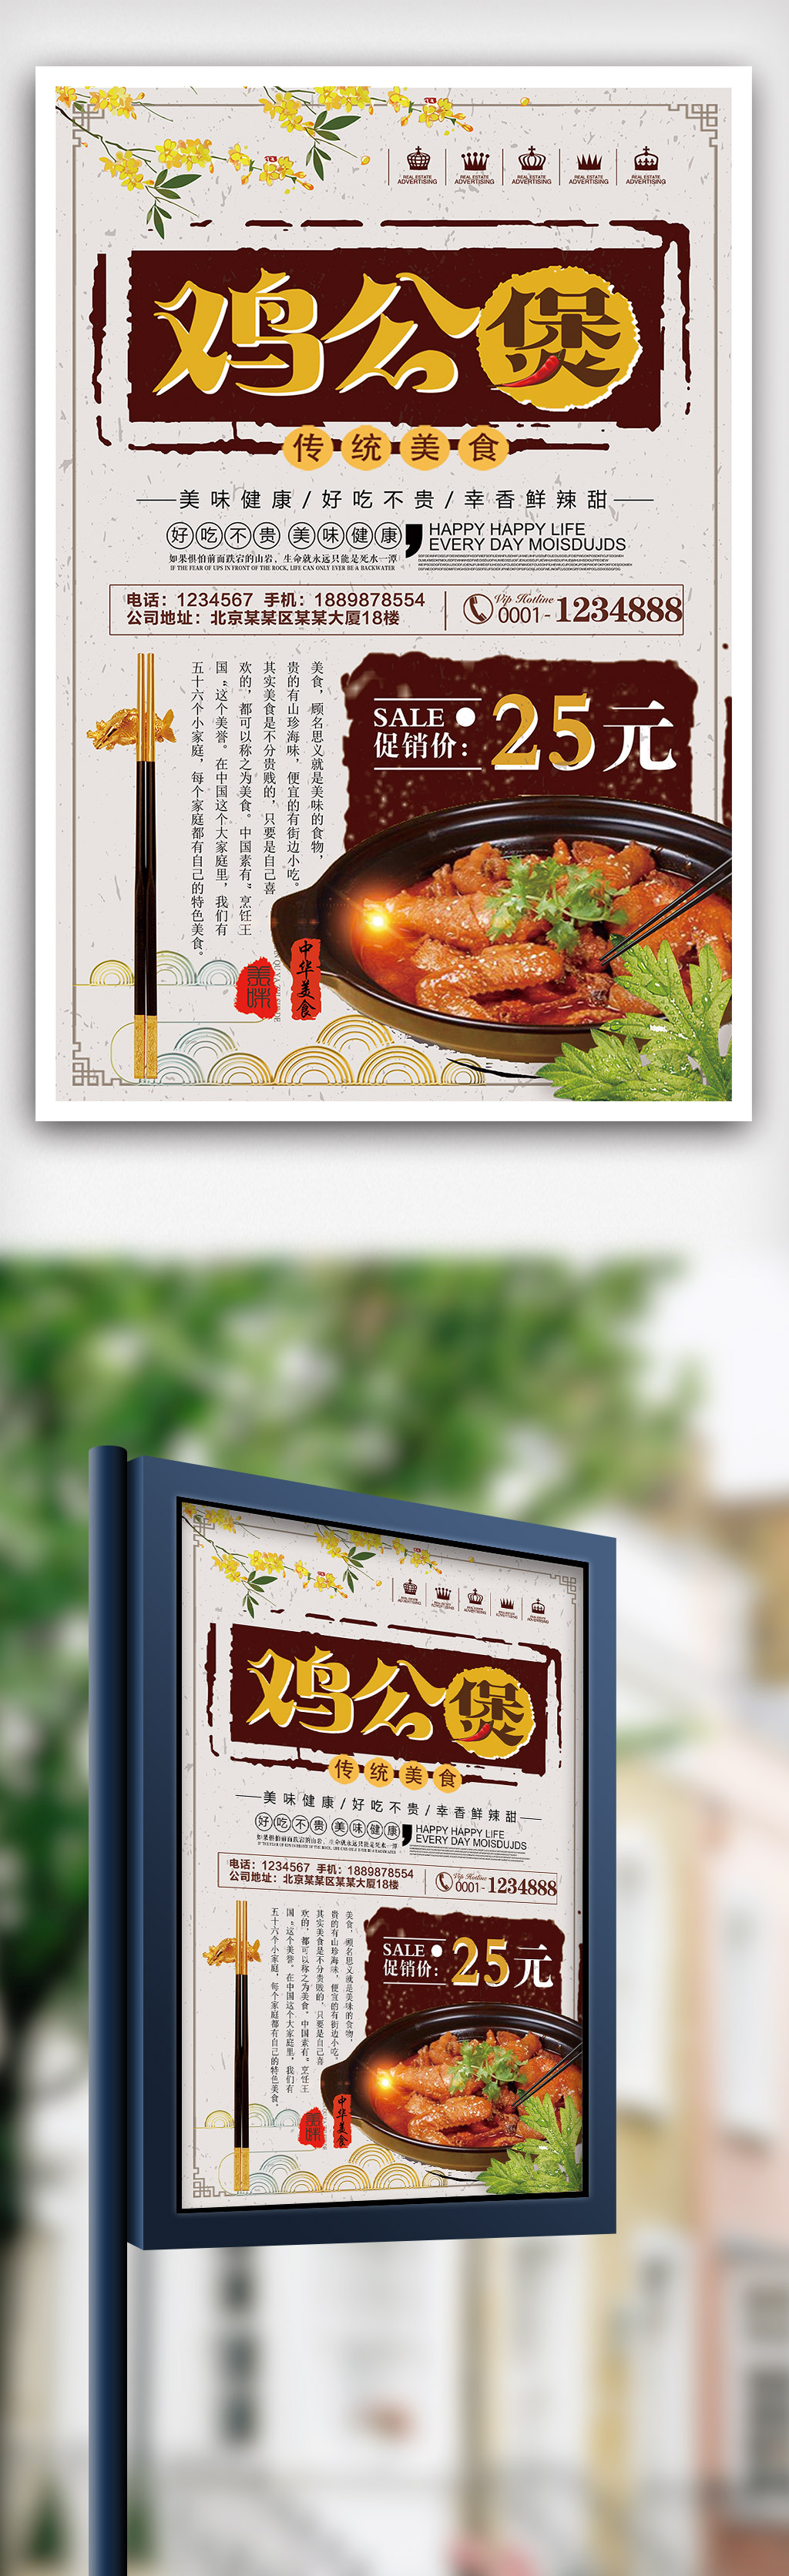 2018年复古中国风鸡公煲餐饮海报图片